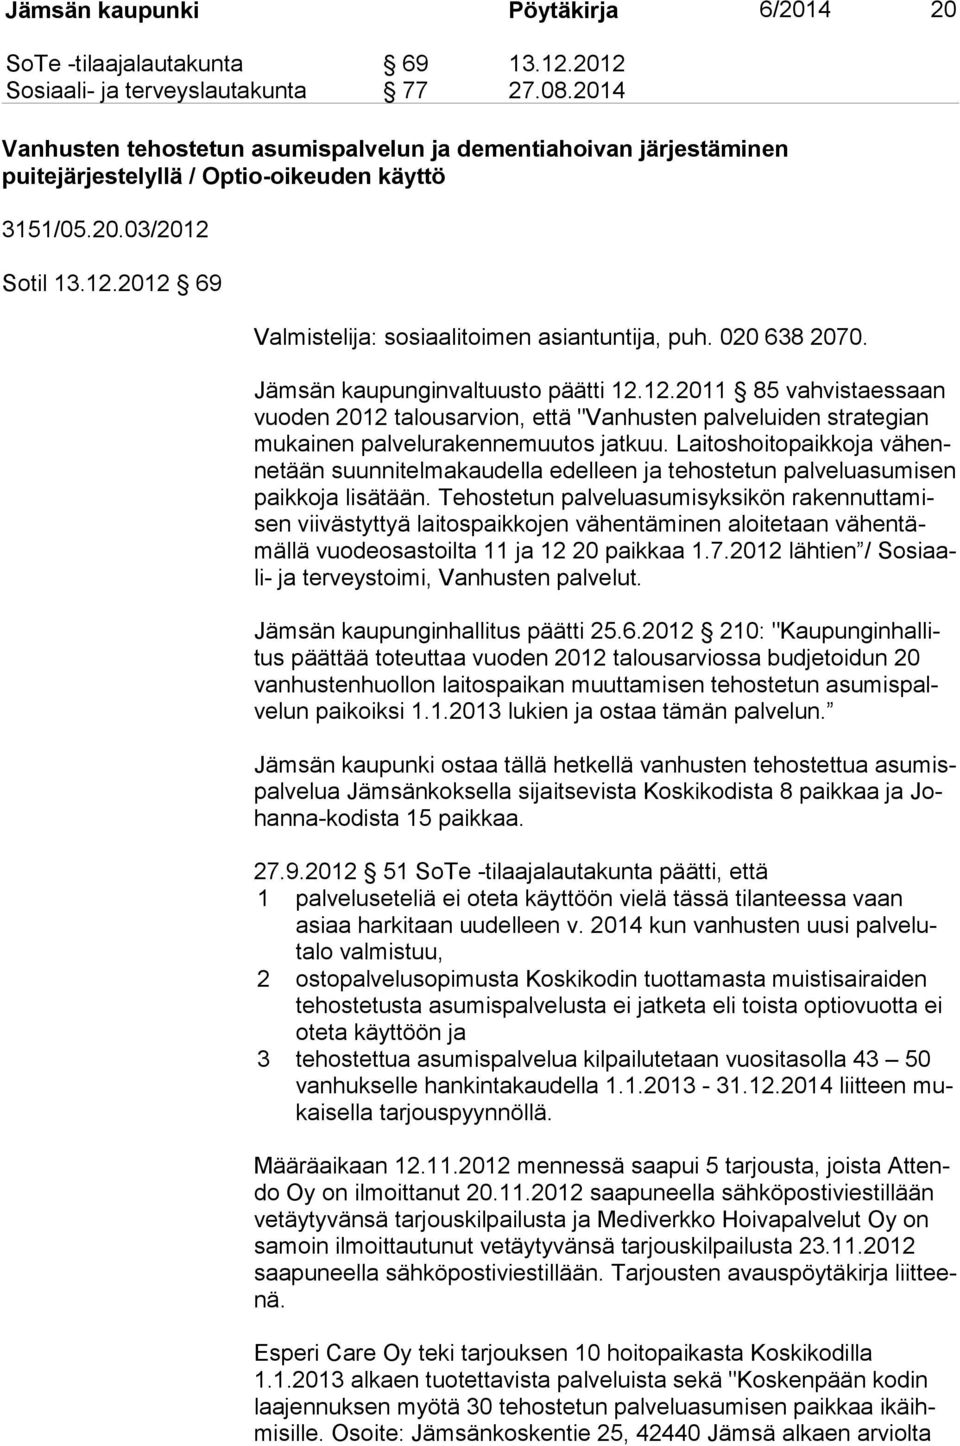 020 638 2070. Jämsän kaupunginvaltuusto päätti 12.12.2011 85 vahvistaessaan vuo den 2012 talousarvion, että "Vanhusten palveluiden strategian mu kai nen palvelurakennemuutos jatkuu.